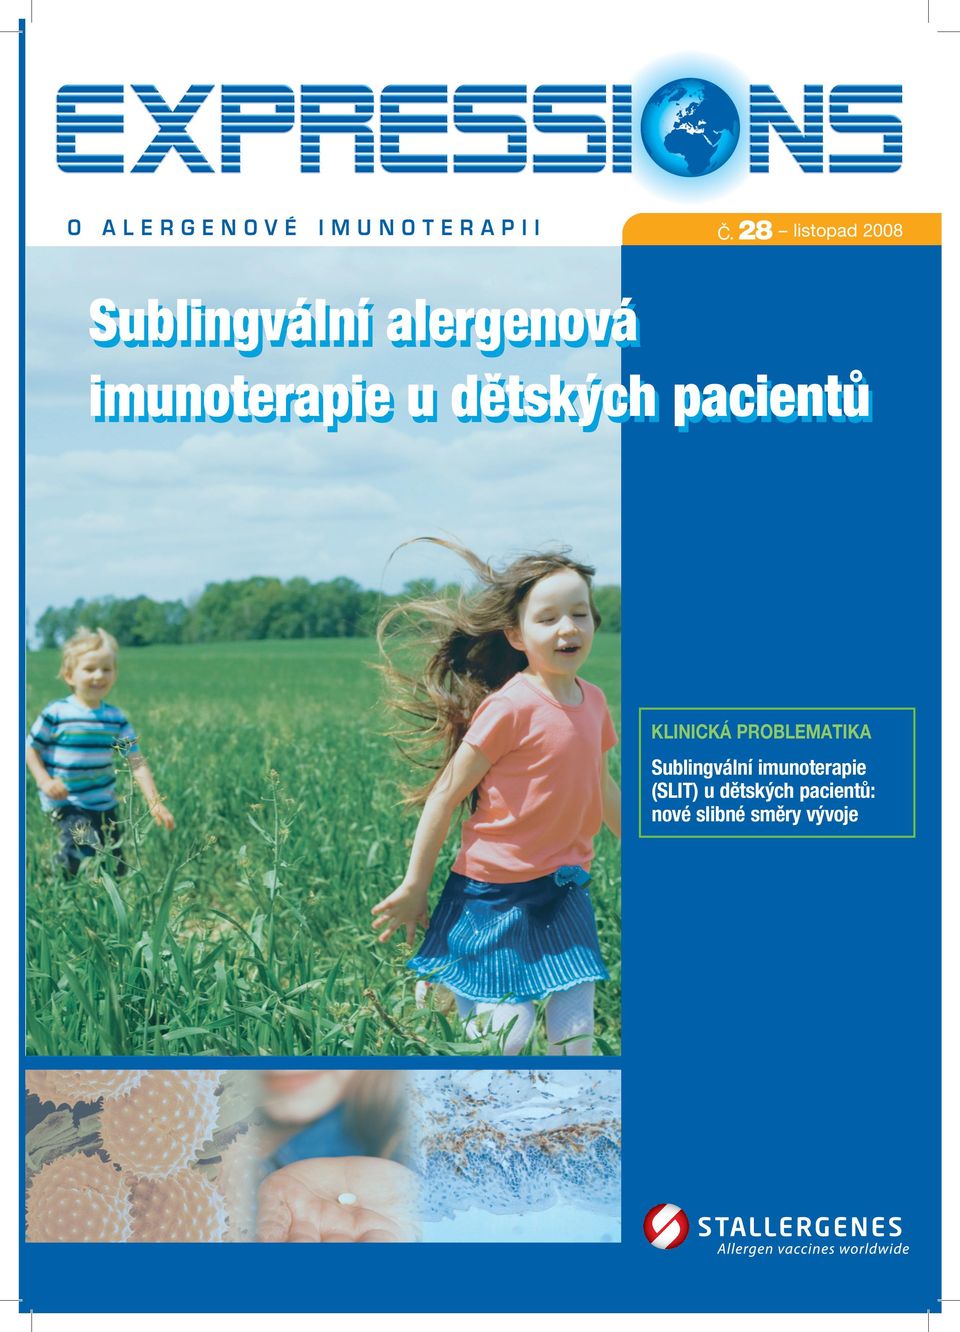 imunoterapie u dětských pacientů Klinická